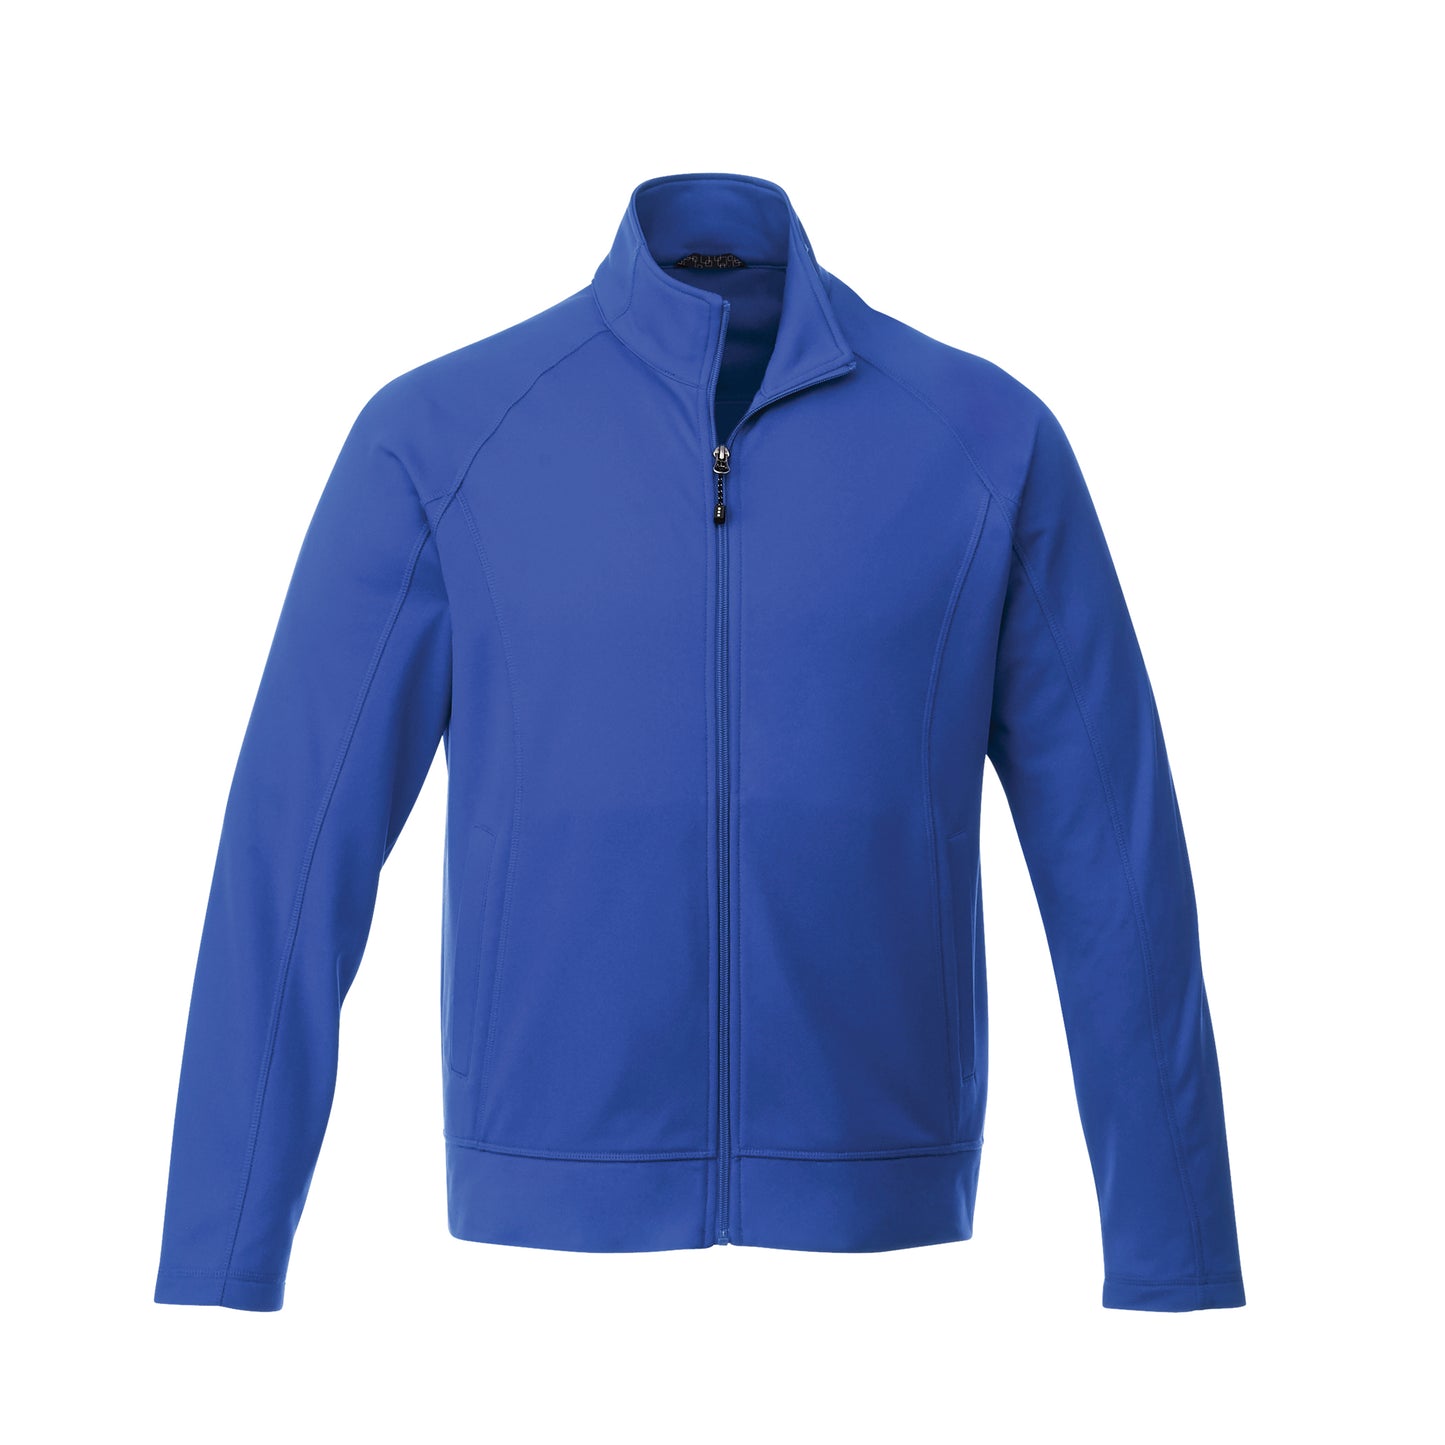 Veste de travail 100 % tricot de jersey pour homme Uniformes Sélect #18117 bleu olympique